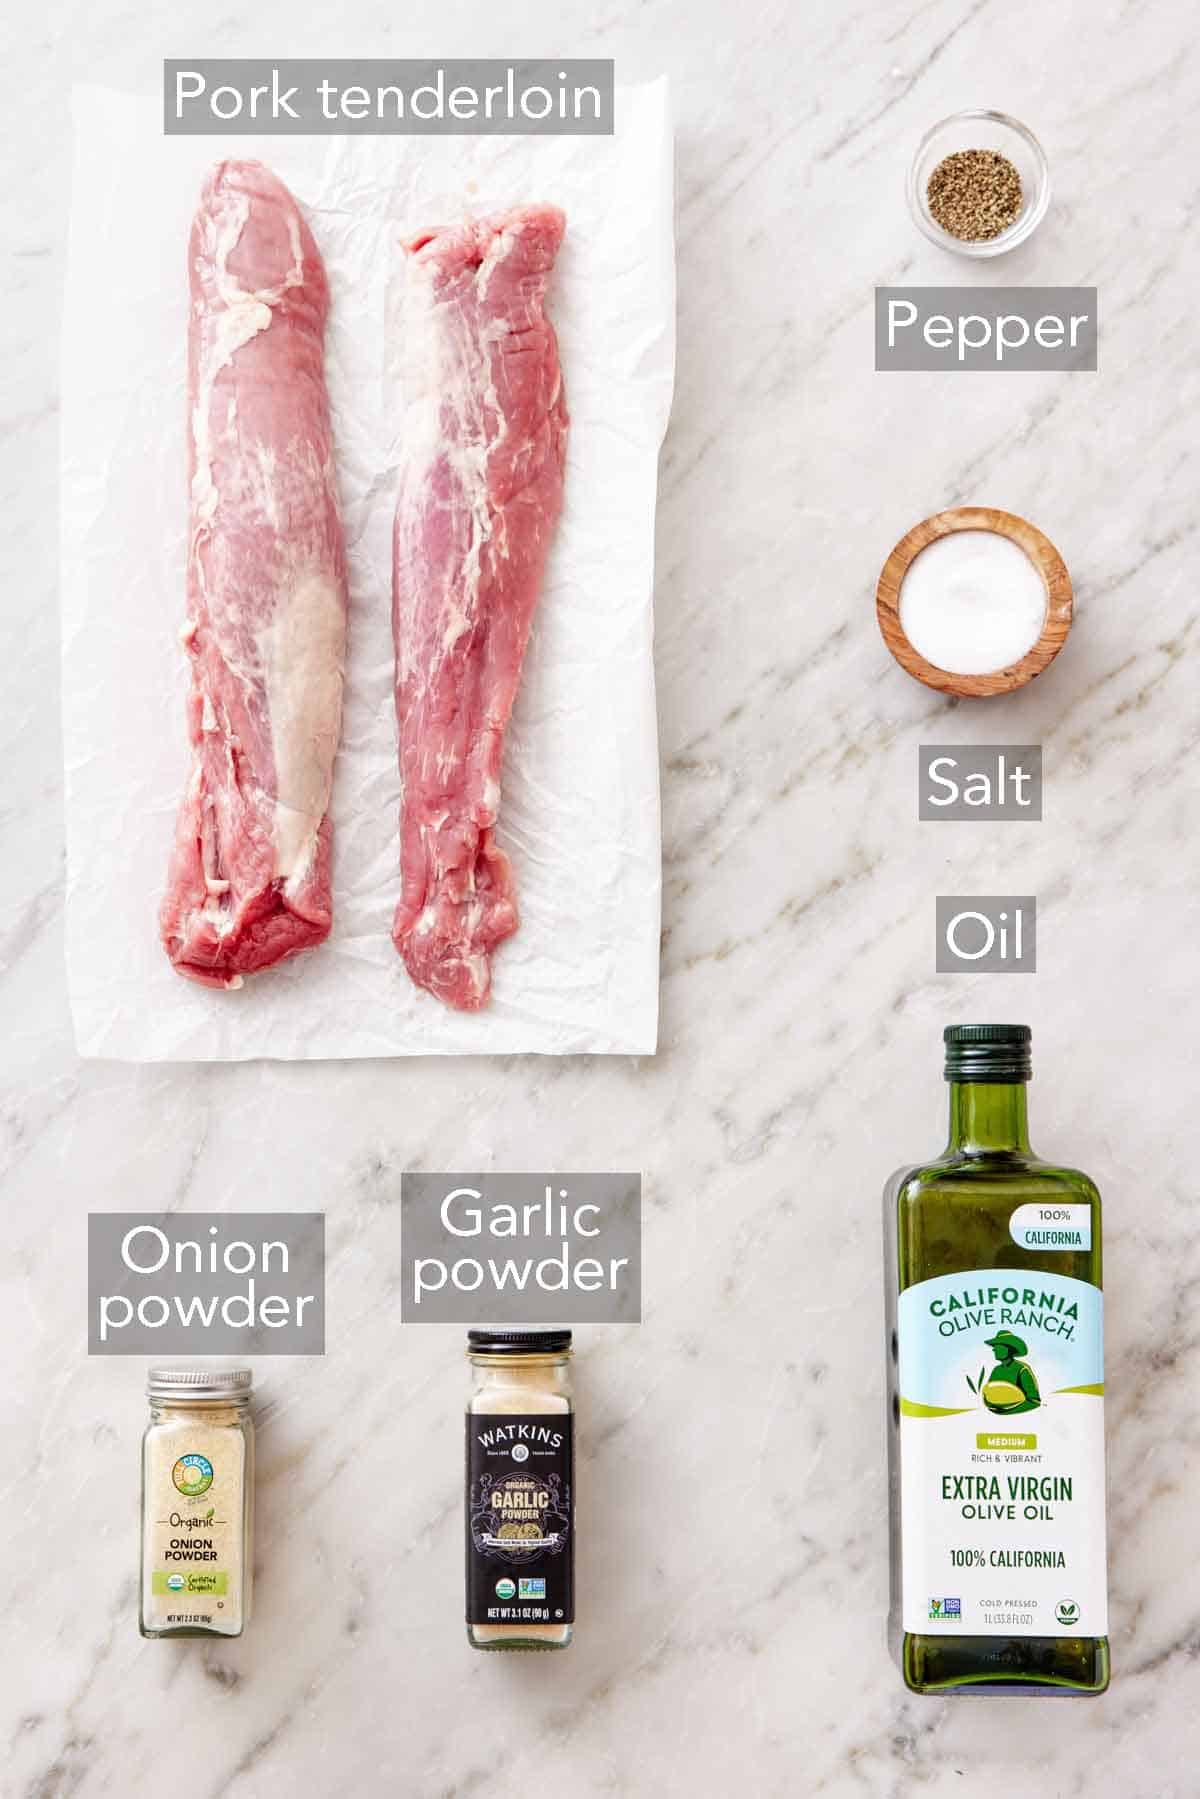 Ingredients needed to cook a pork tenderloin.